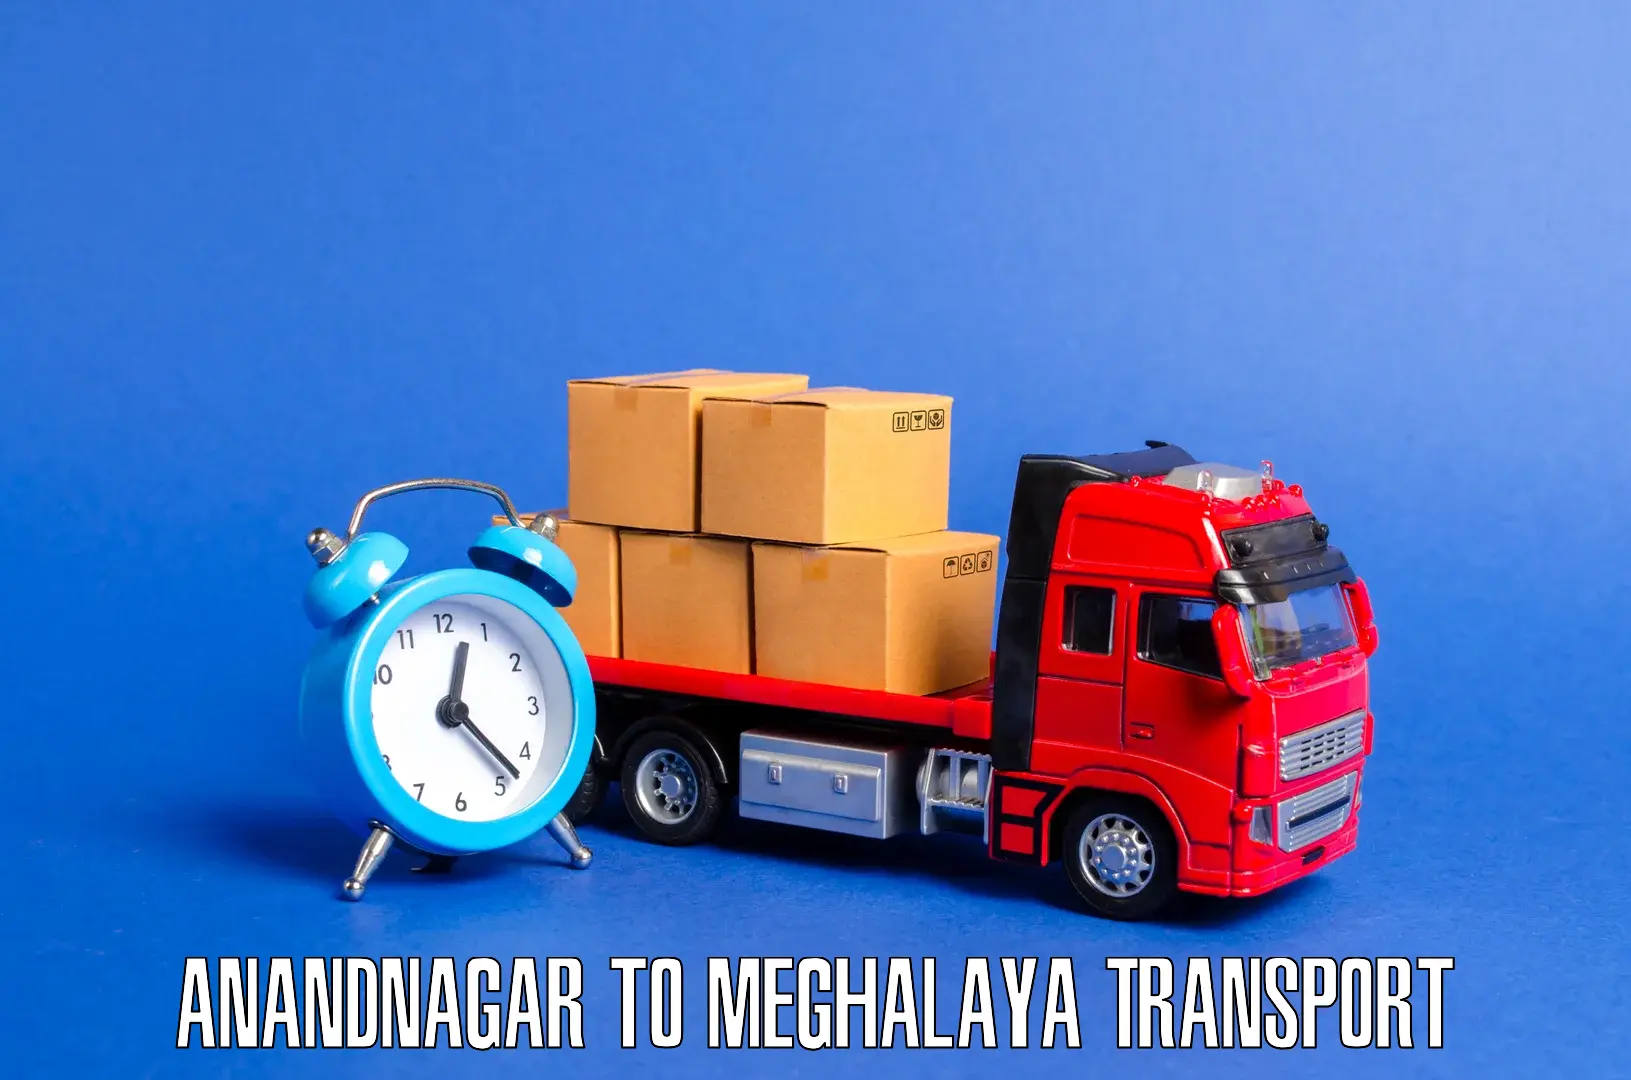 Nearby transport service Anandnagar to West Khasi Hills